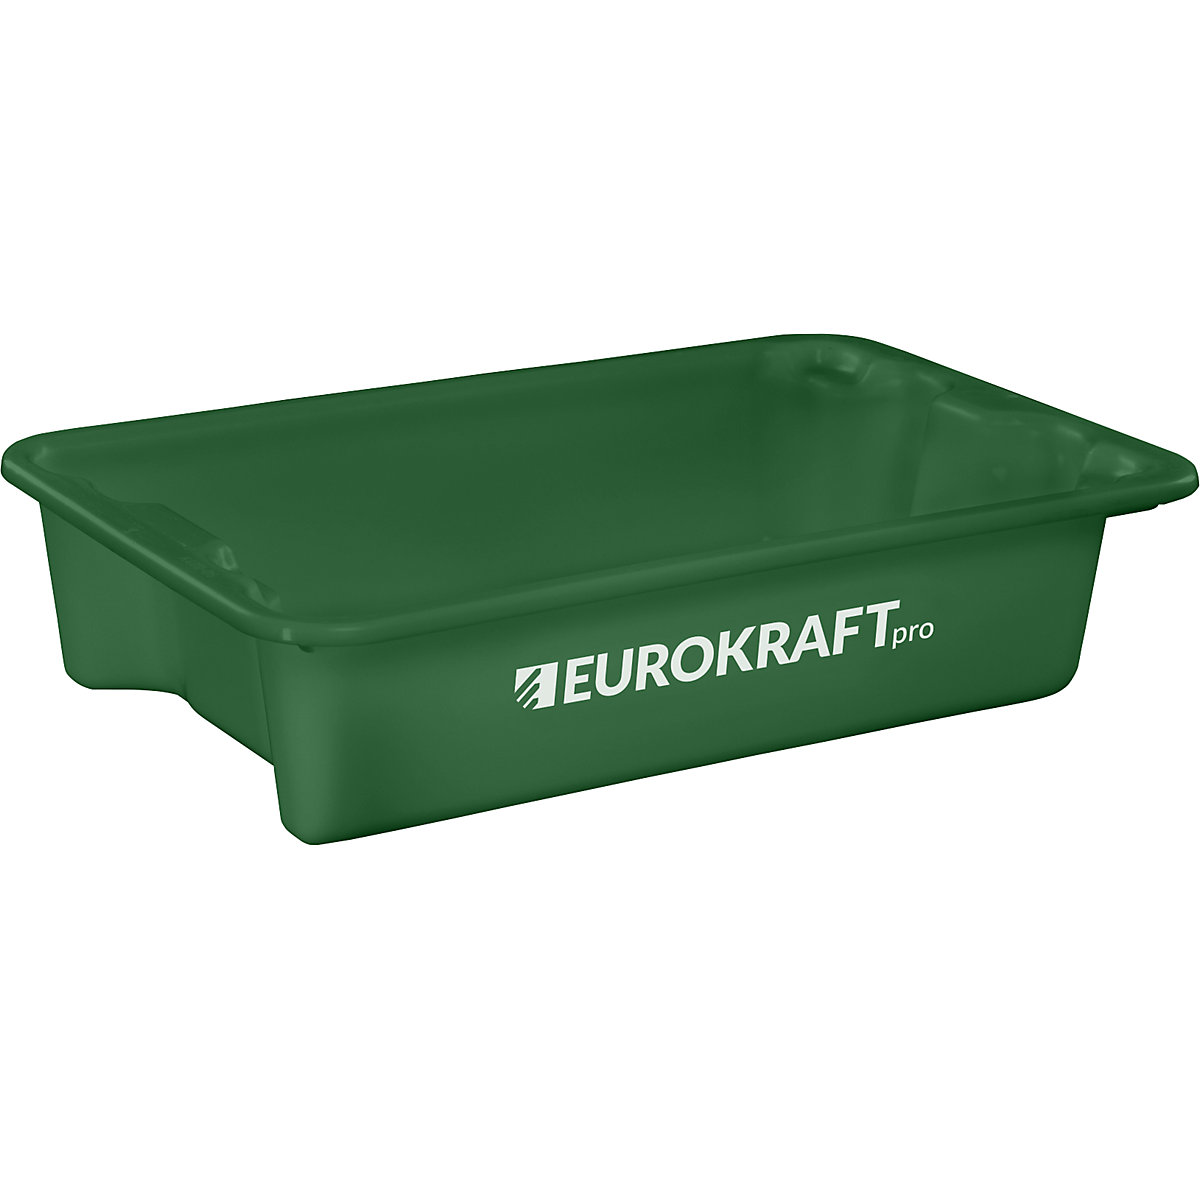 EUROKRAFTpro – Otočná stohovacia nádoba z polypropylénu vhodného pre potraviny, objem 18 litrov, OJ 3 ks, steny a dno uzatvorené, zelená